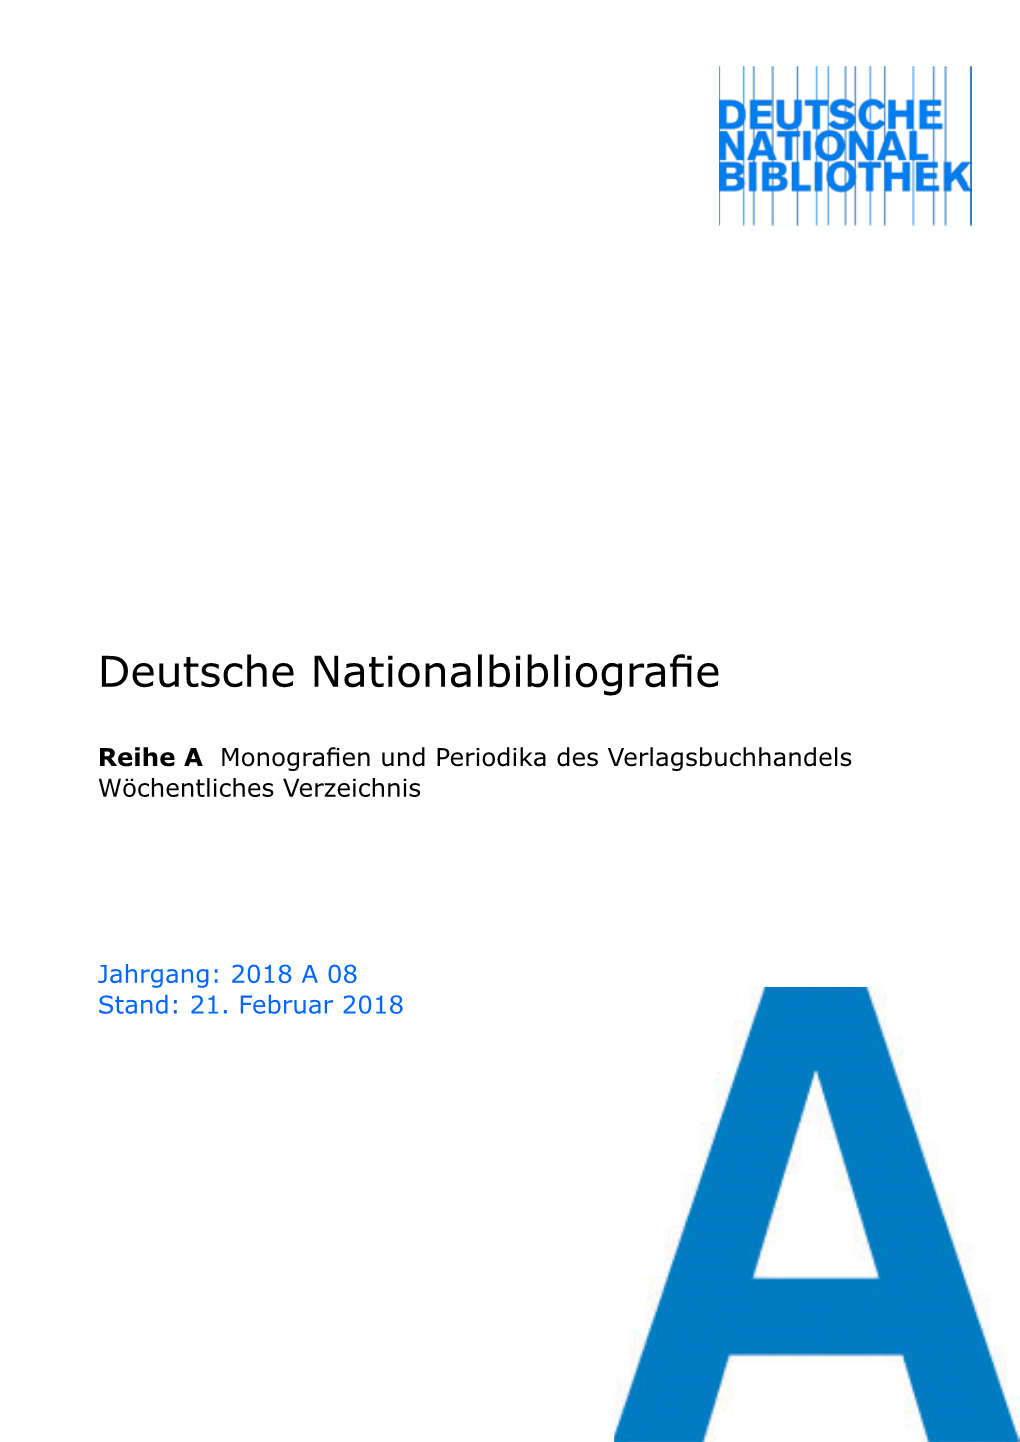 Deutsche Nationalbibliografie 2018 a 08